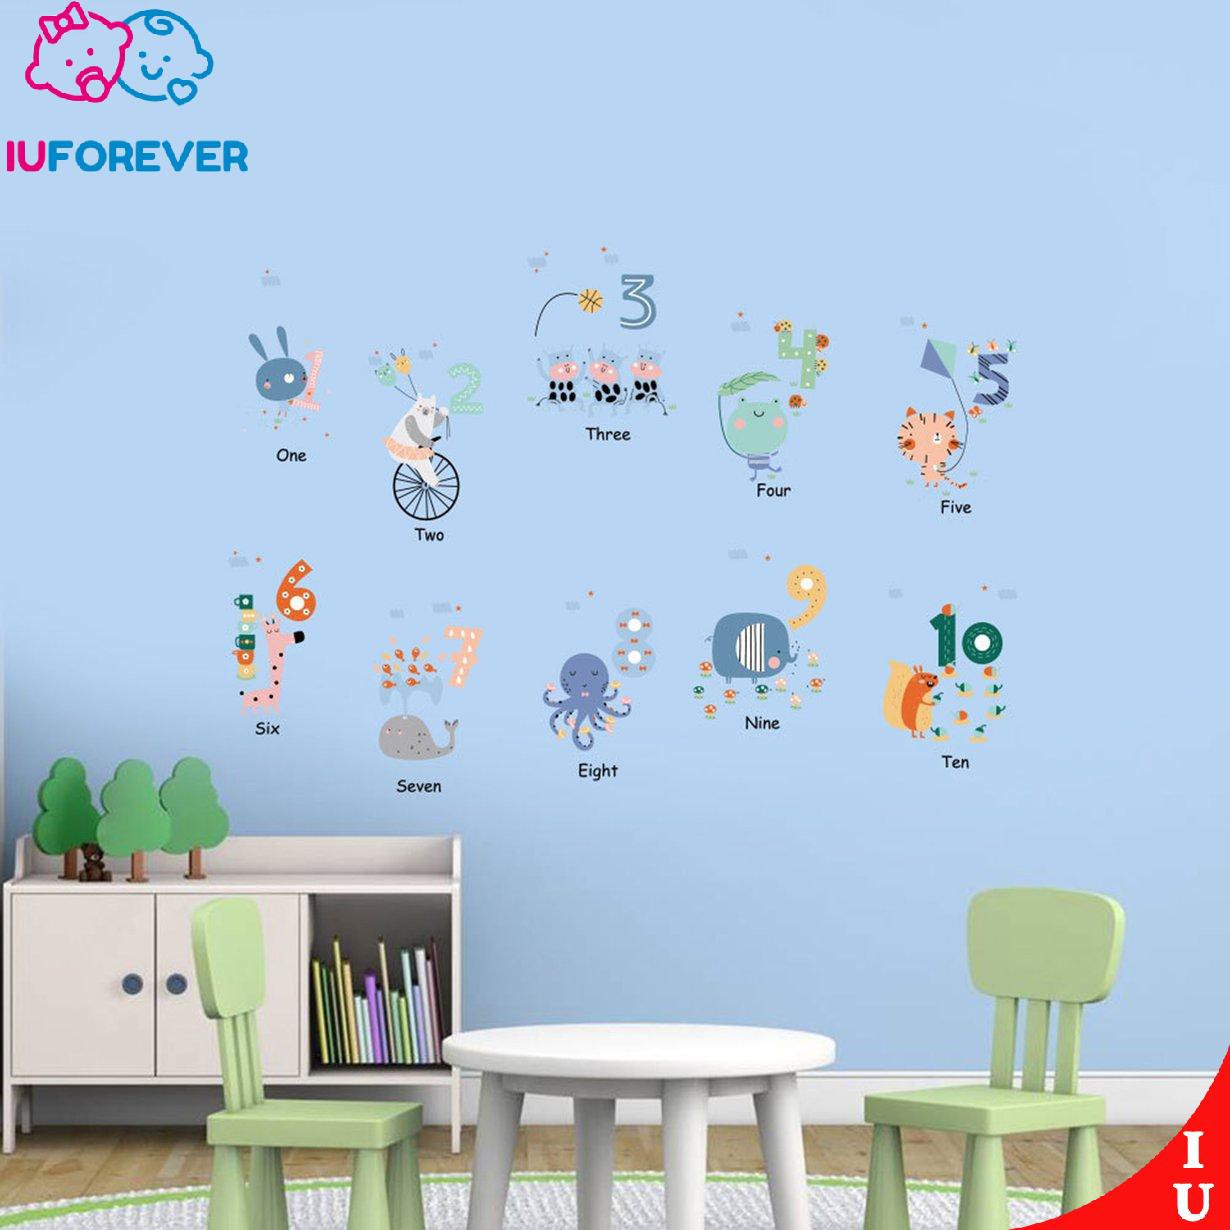 Sticker Dán Tường Họa Tiết Hình Con Số Và Động Vật Từ 1 Đến 10 Dùng Trang Trí Phòng Cho Trẻ Nhỏ